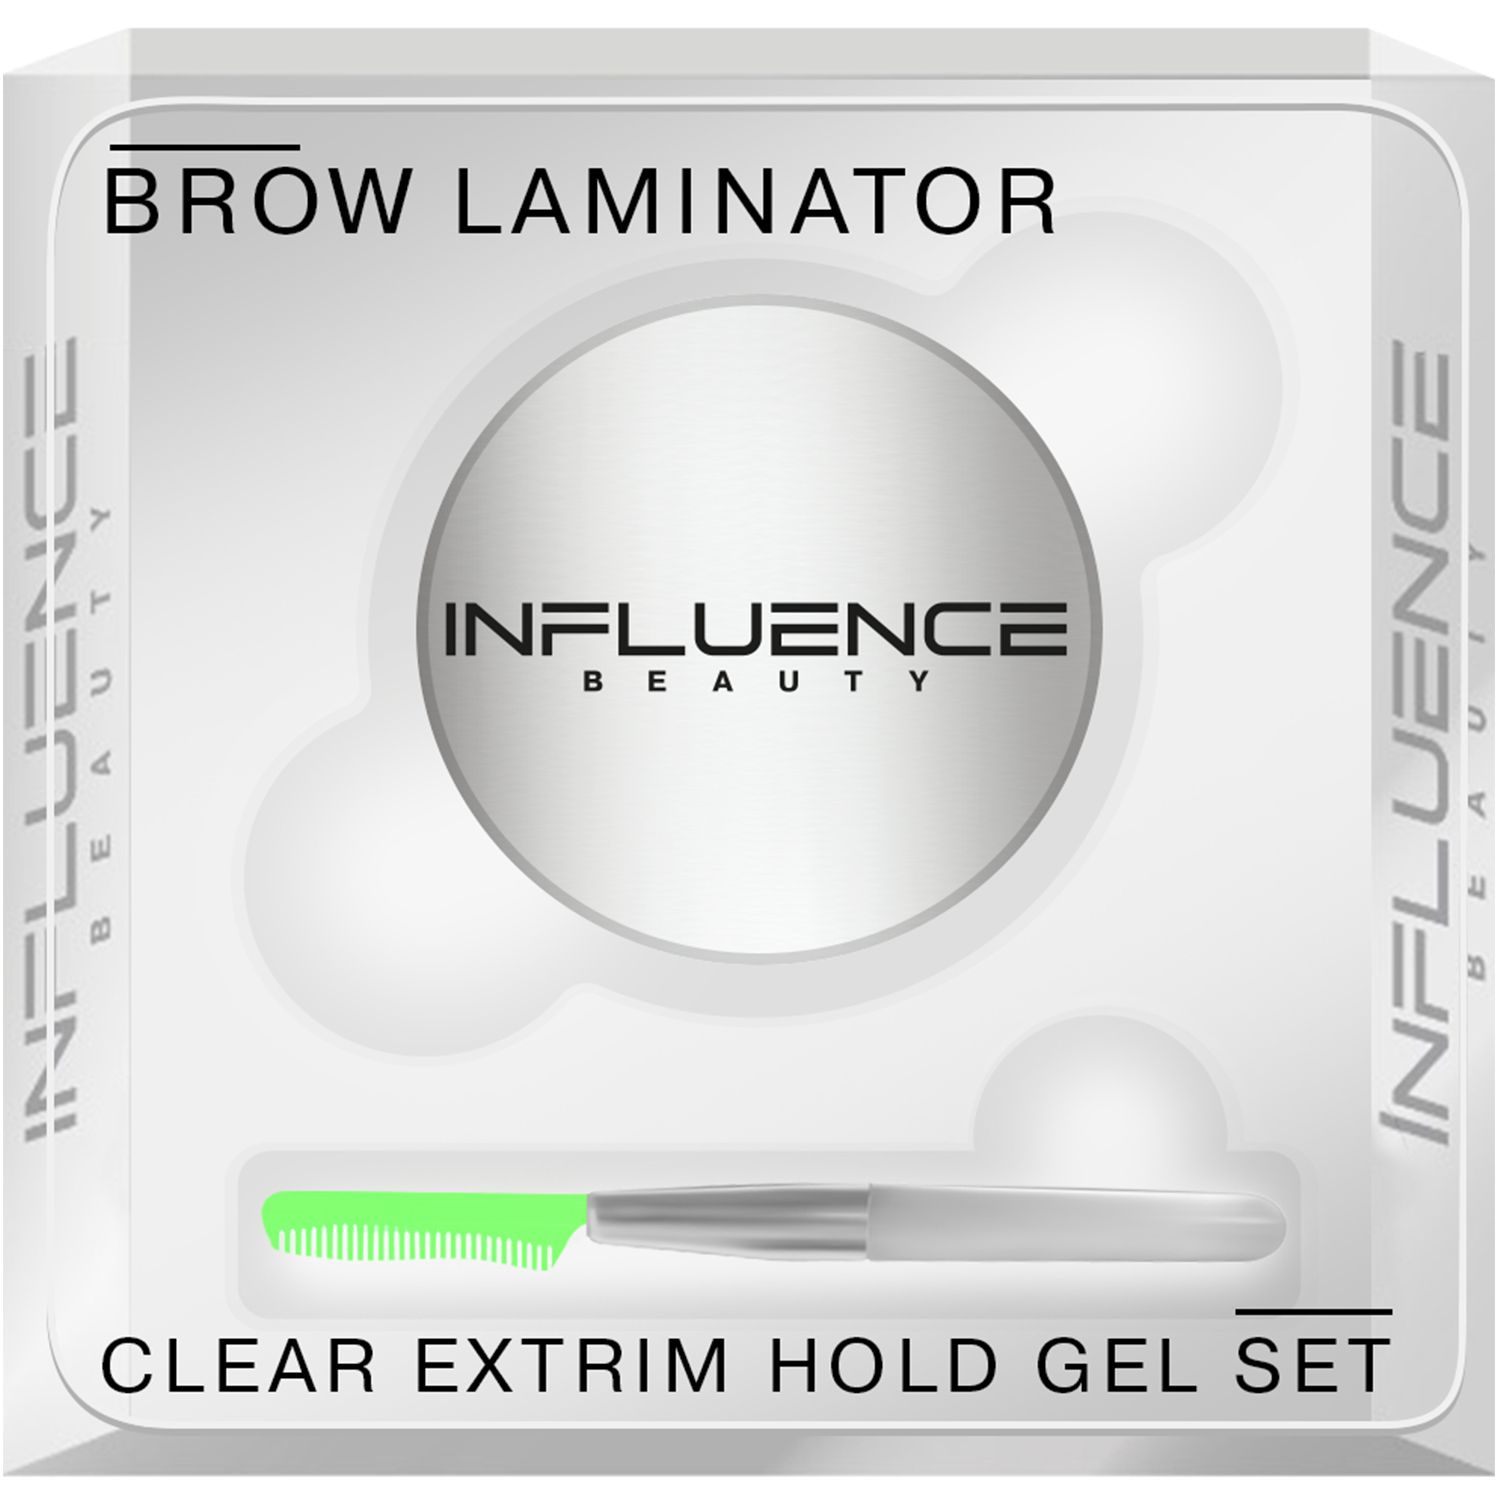 Гель для бровей Influence Beauty Brow Laminator, ламинирование, укладка, прозрачный, 4,5 г korolkova гель для роста ресниц и бровей lash